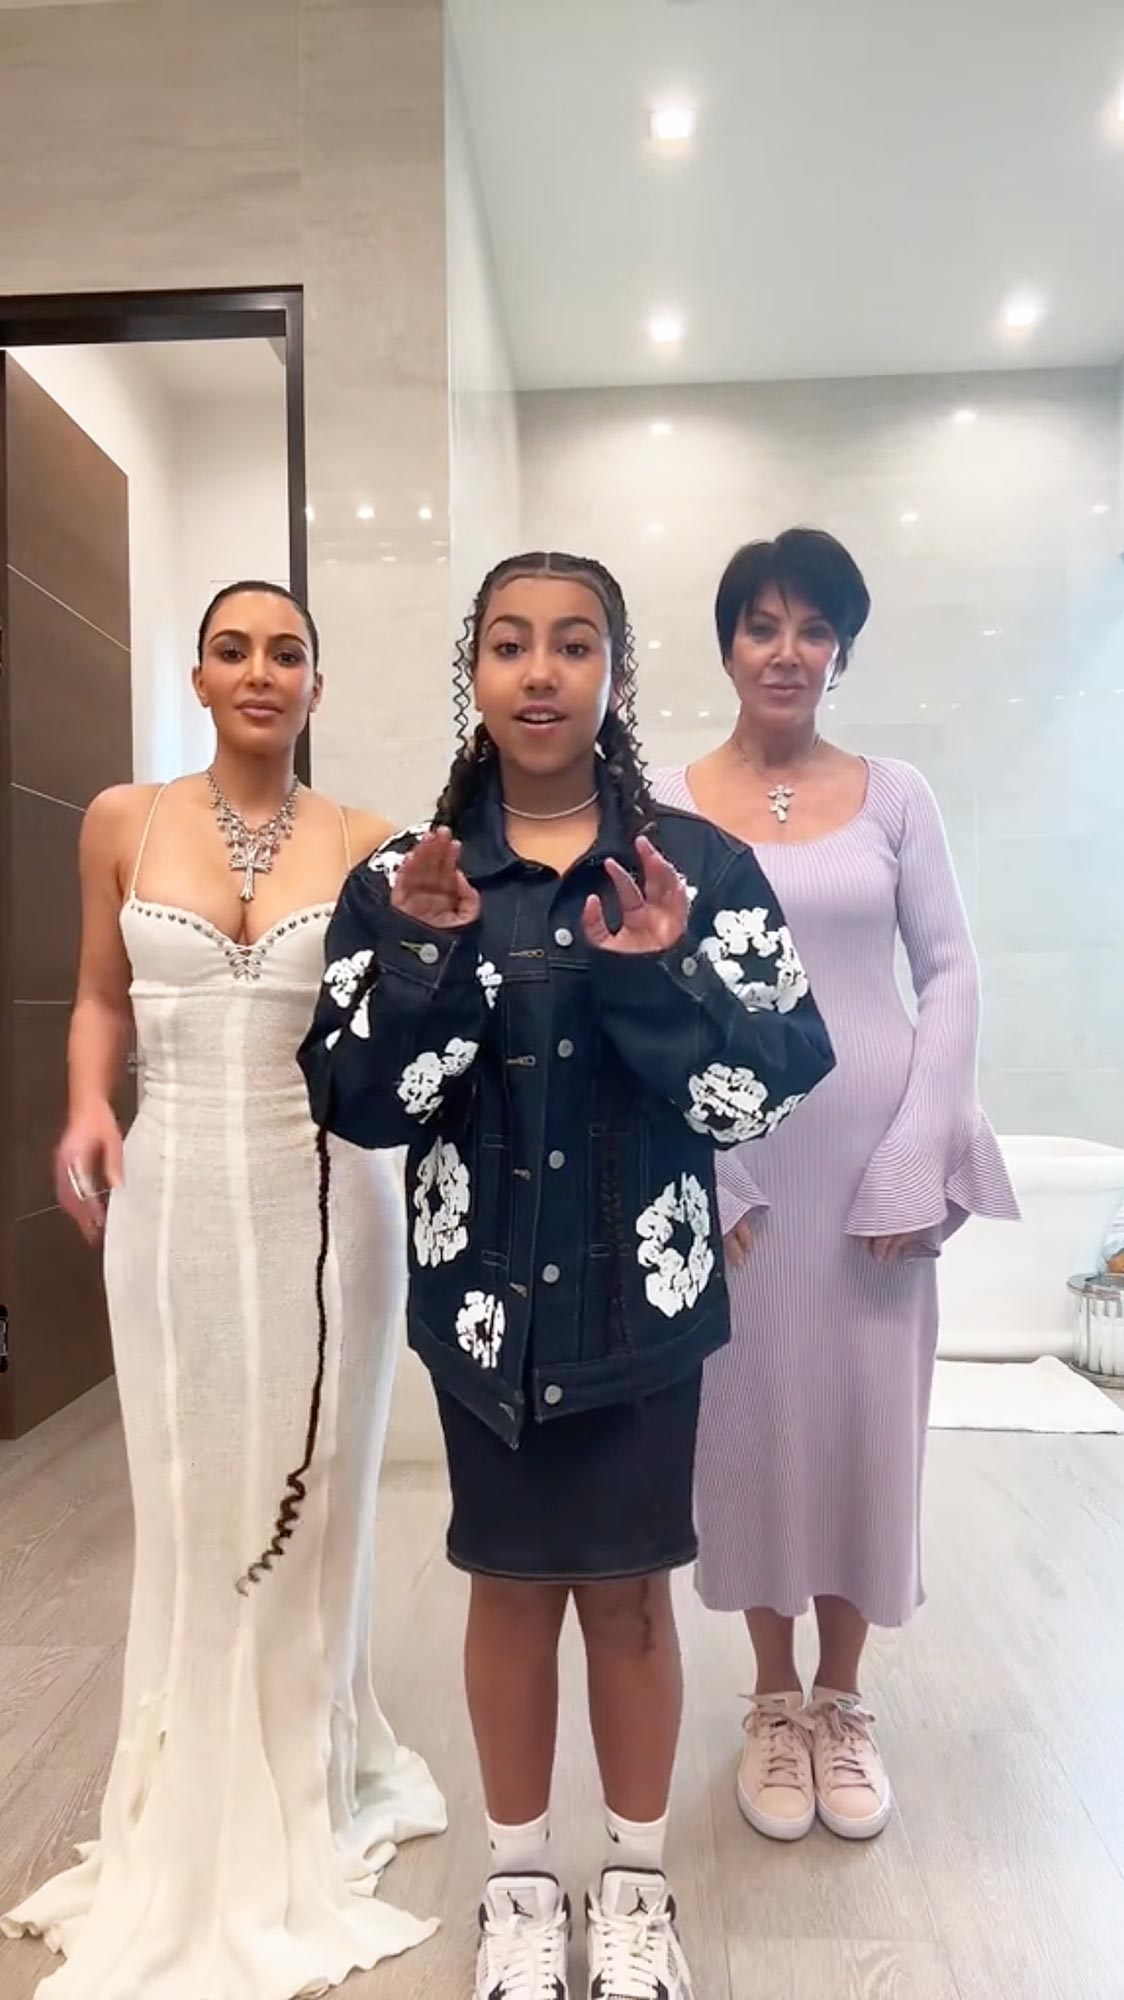 Kim Kardashian Turns Easter Into a Fashion Show in Skintight White Dress